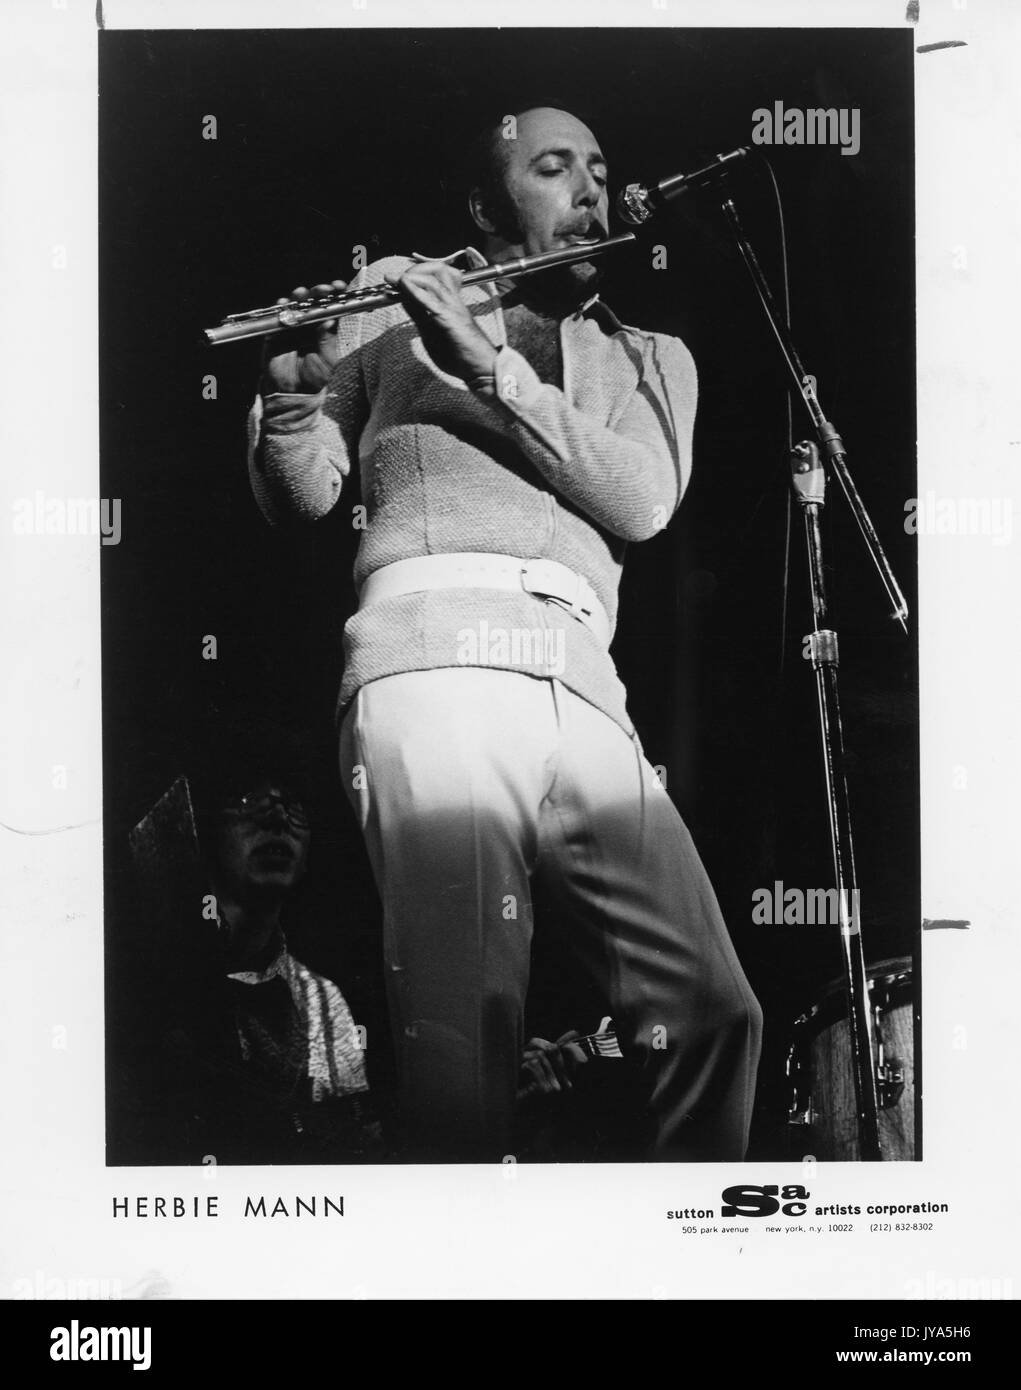 Photographie d'Herbie mann, célèbre flûtiste de jazz américain, debout sur scène sous les projecteurs tout en jouant de la flûte devant un microphone, 1970. Banque D'Images